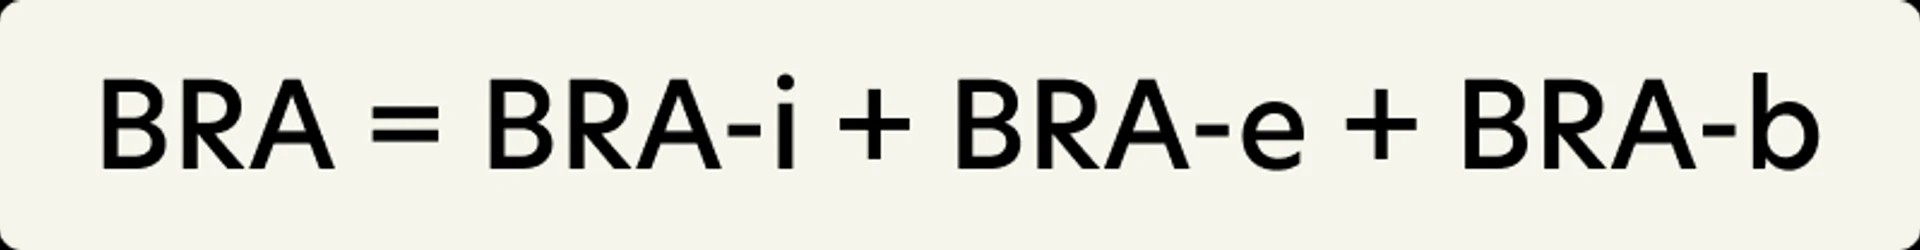 BRA er summen av BRA-i, BRA-e og BRA-b